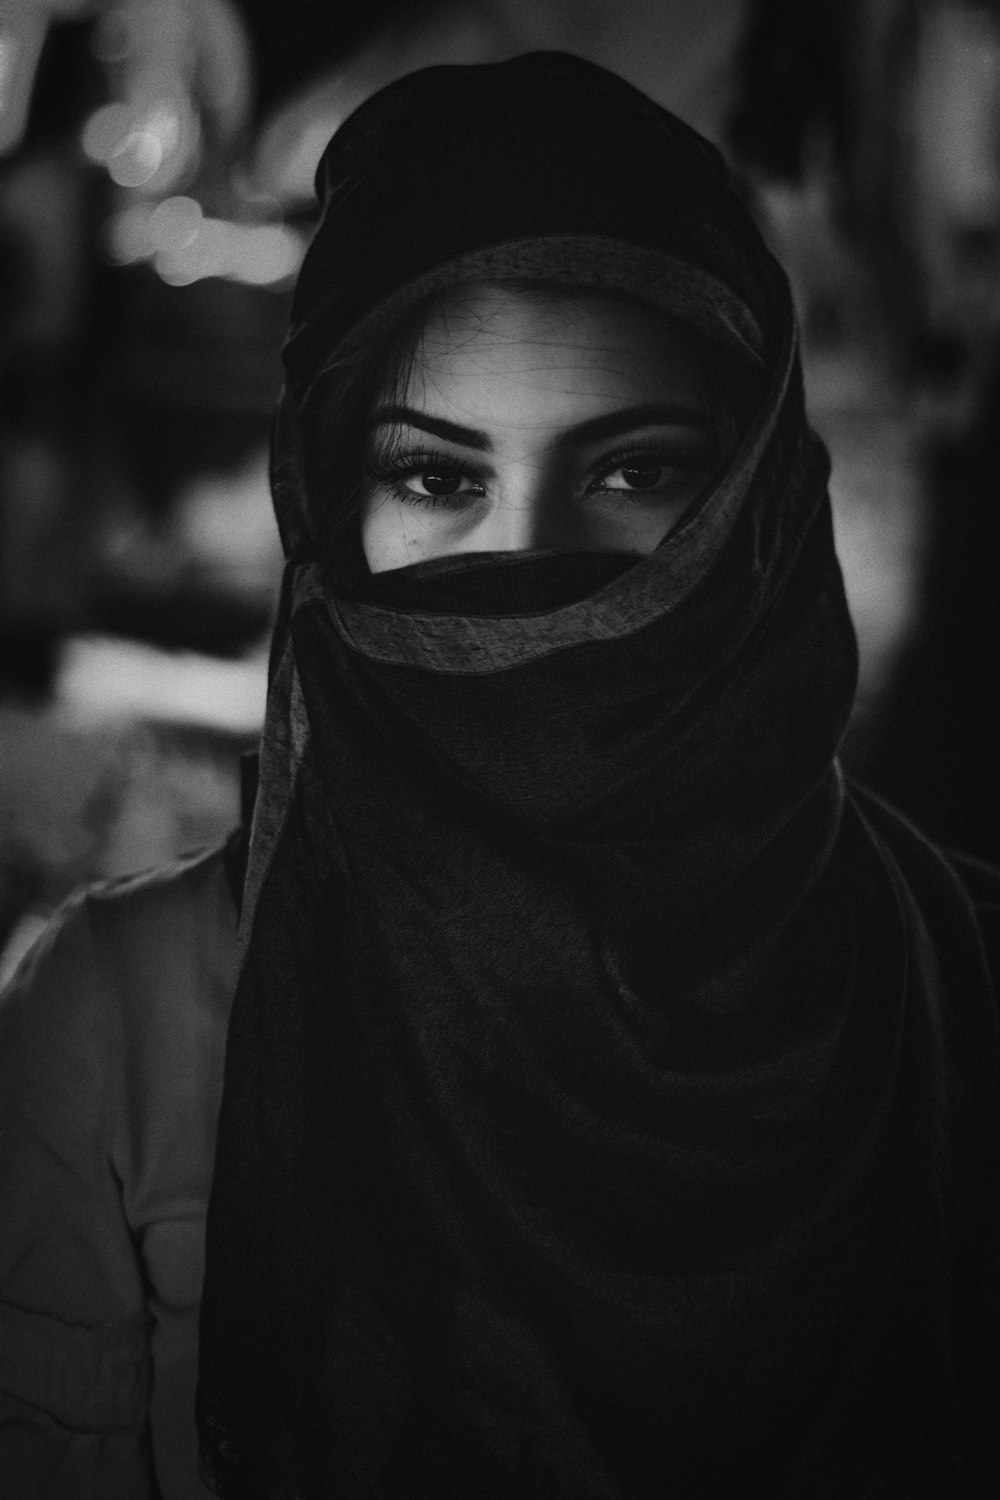 foto em tons de cinza da mulher que usa o hijab